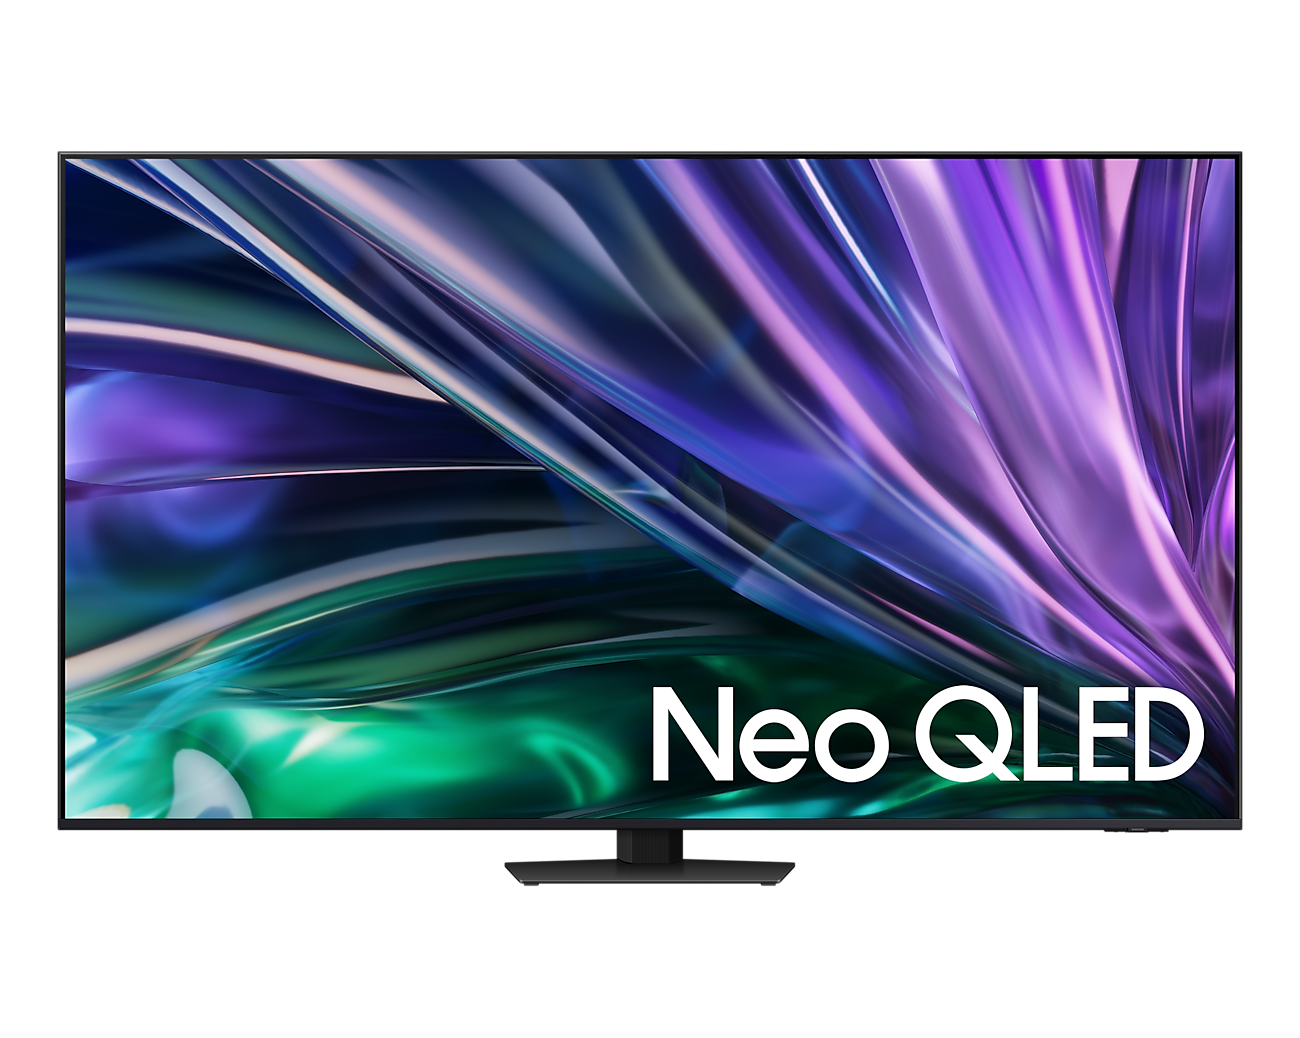 Smart Tivi Samsung Neo QLED 4K QN85D Tizen OS - Hàng chính hãng